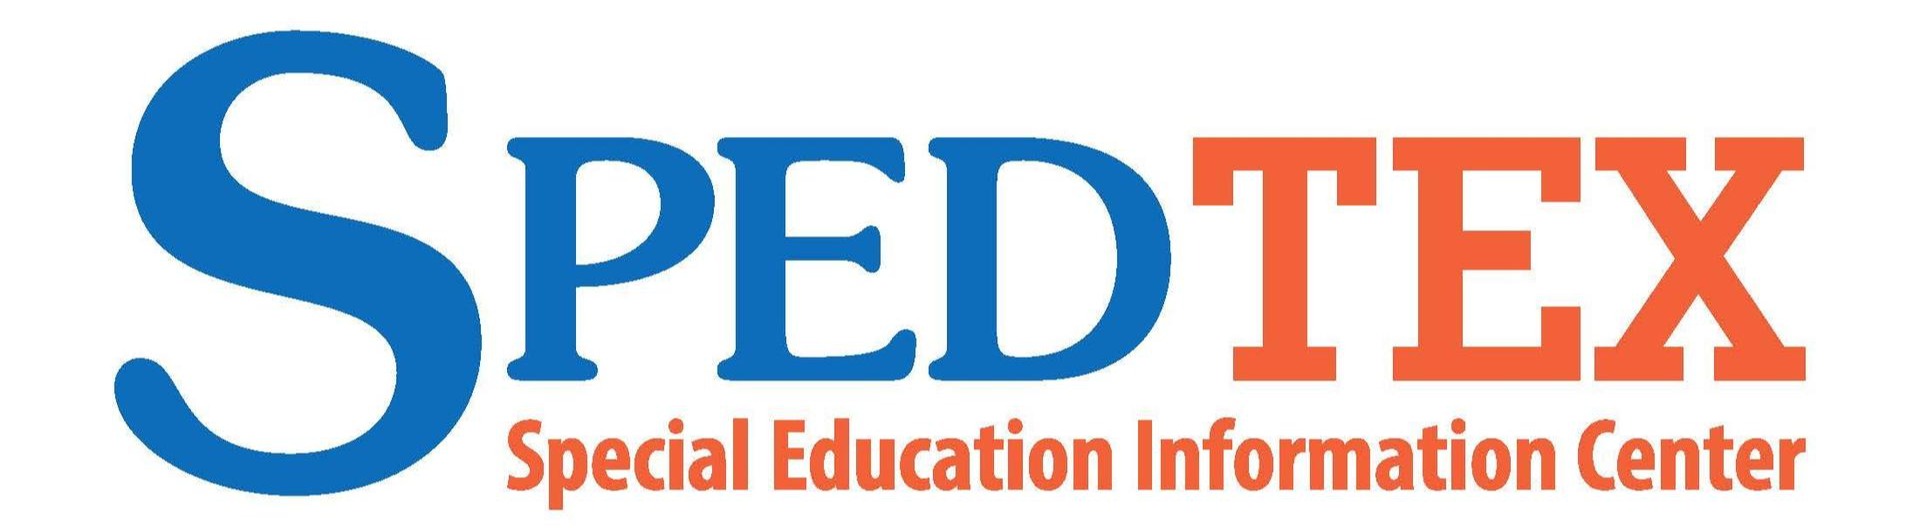 SPEDTEX logo